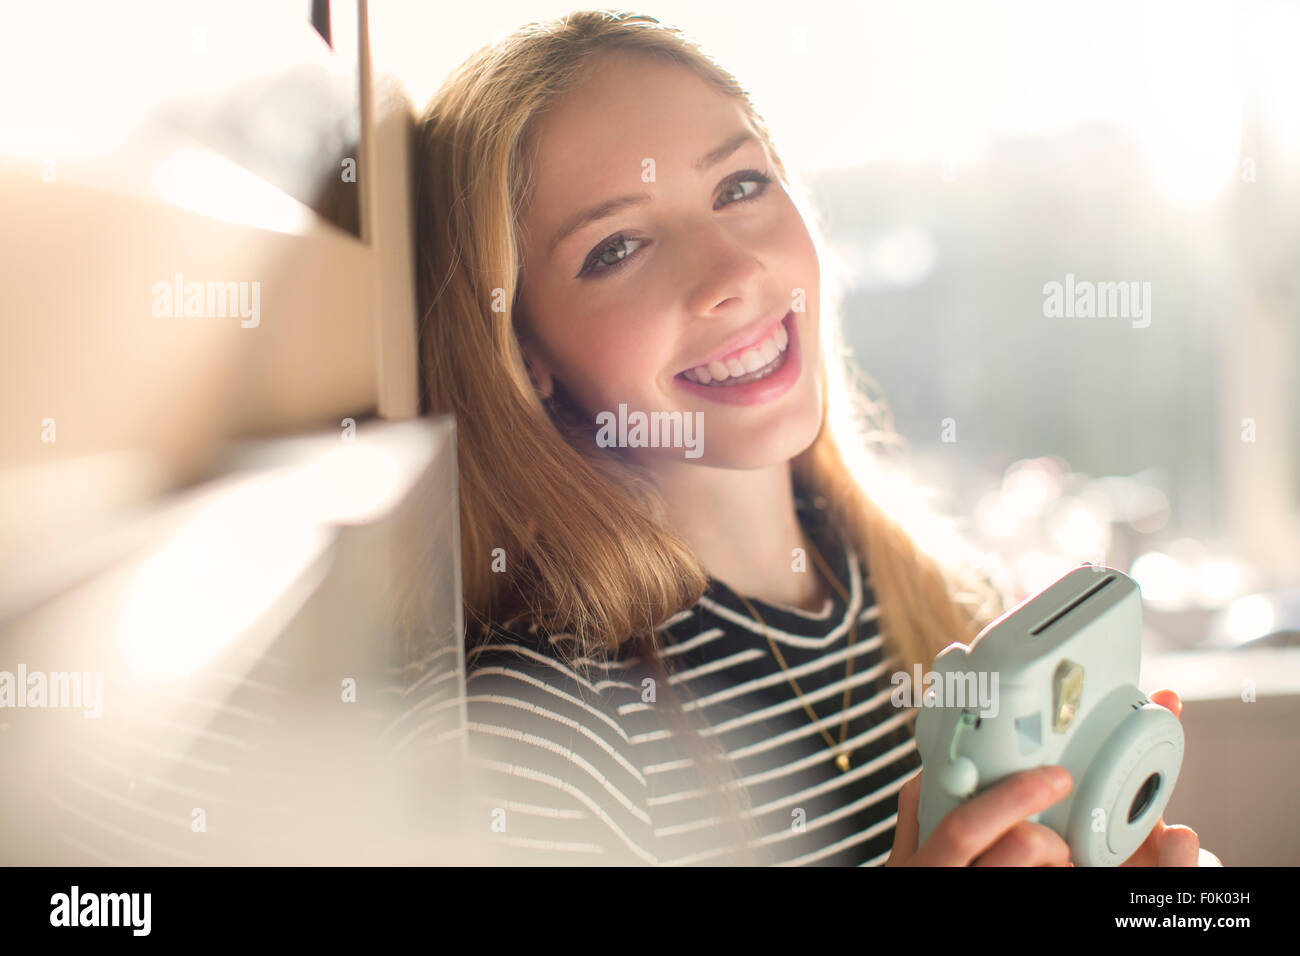 Ritratto sorridente ragazza adolescente con fotocamera istantanea Foto Stock